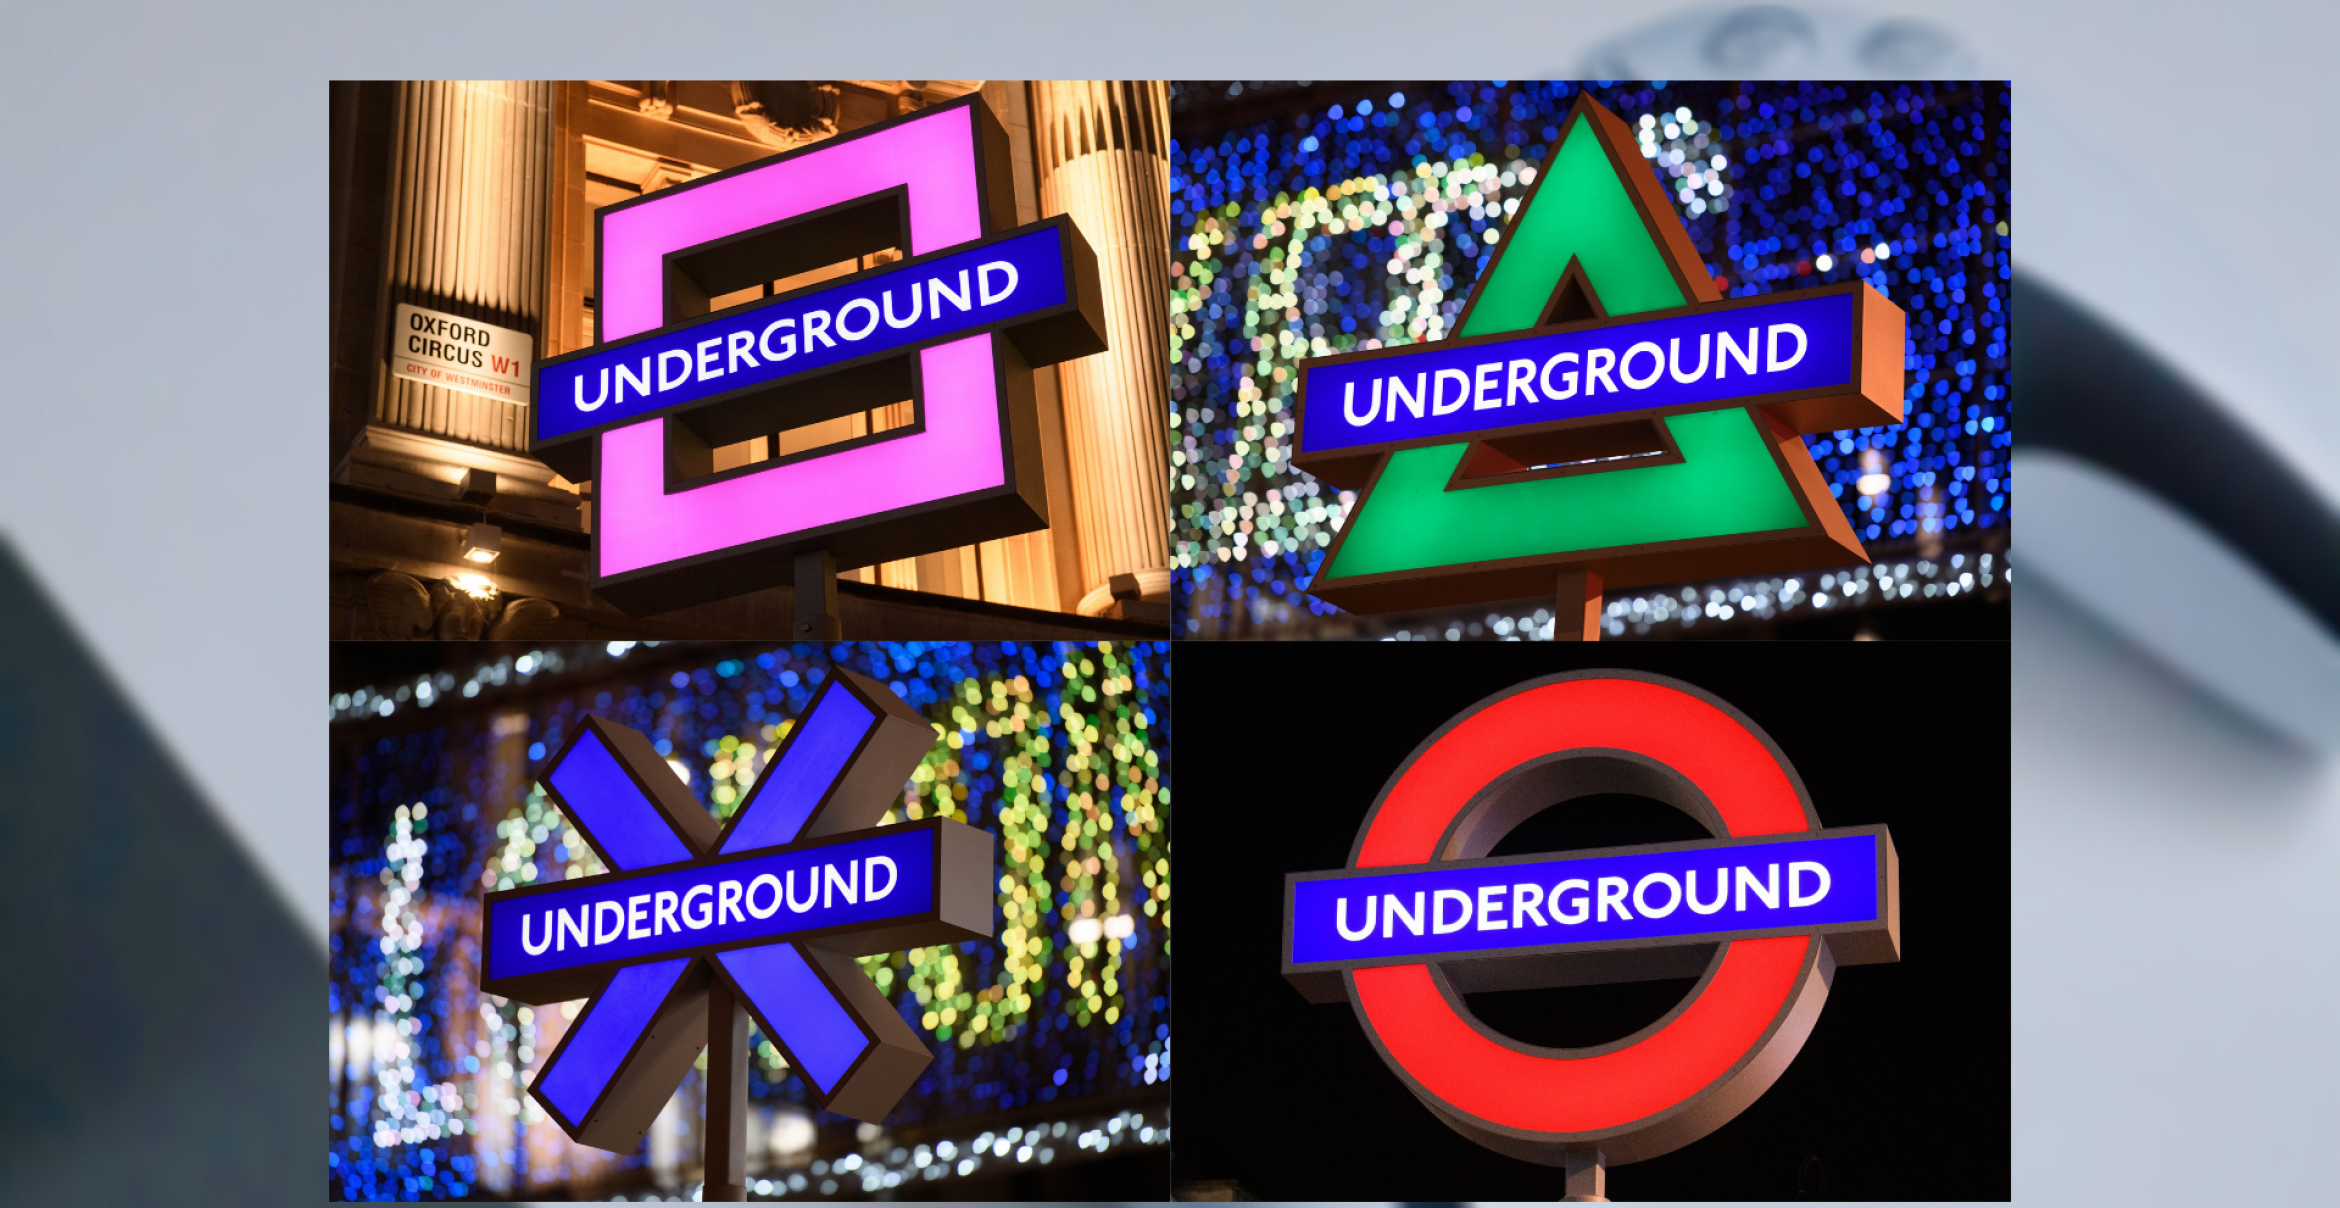 Der Hype ist real: Zum Playstation-5-Release dekoriert Sony einen Londoner U-Bahn-Eingang um